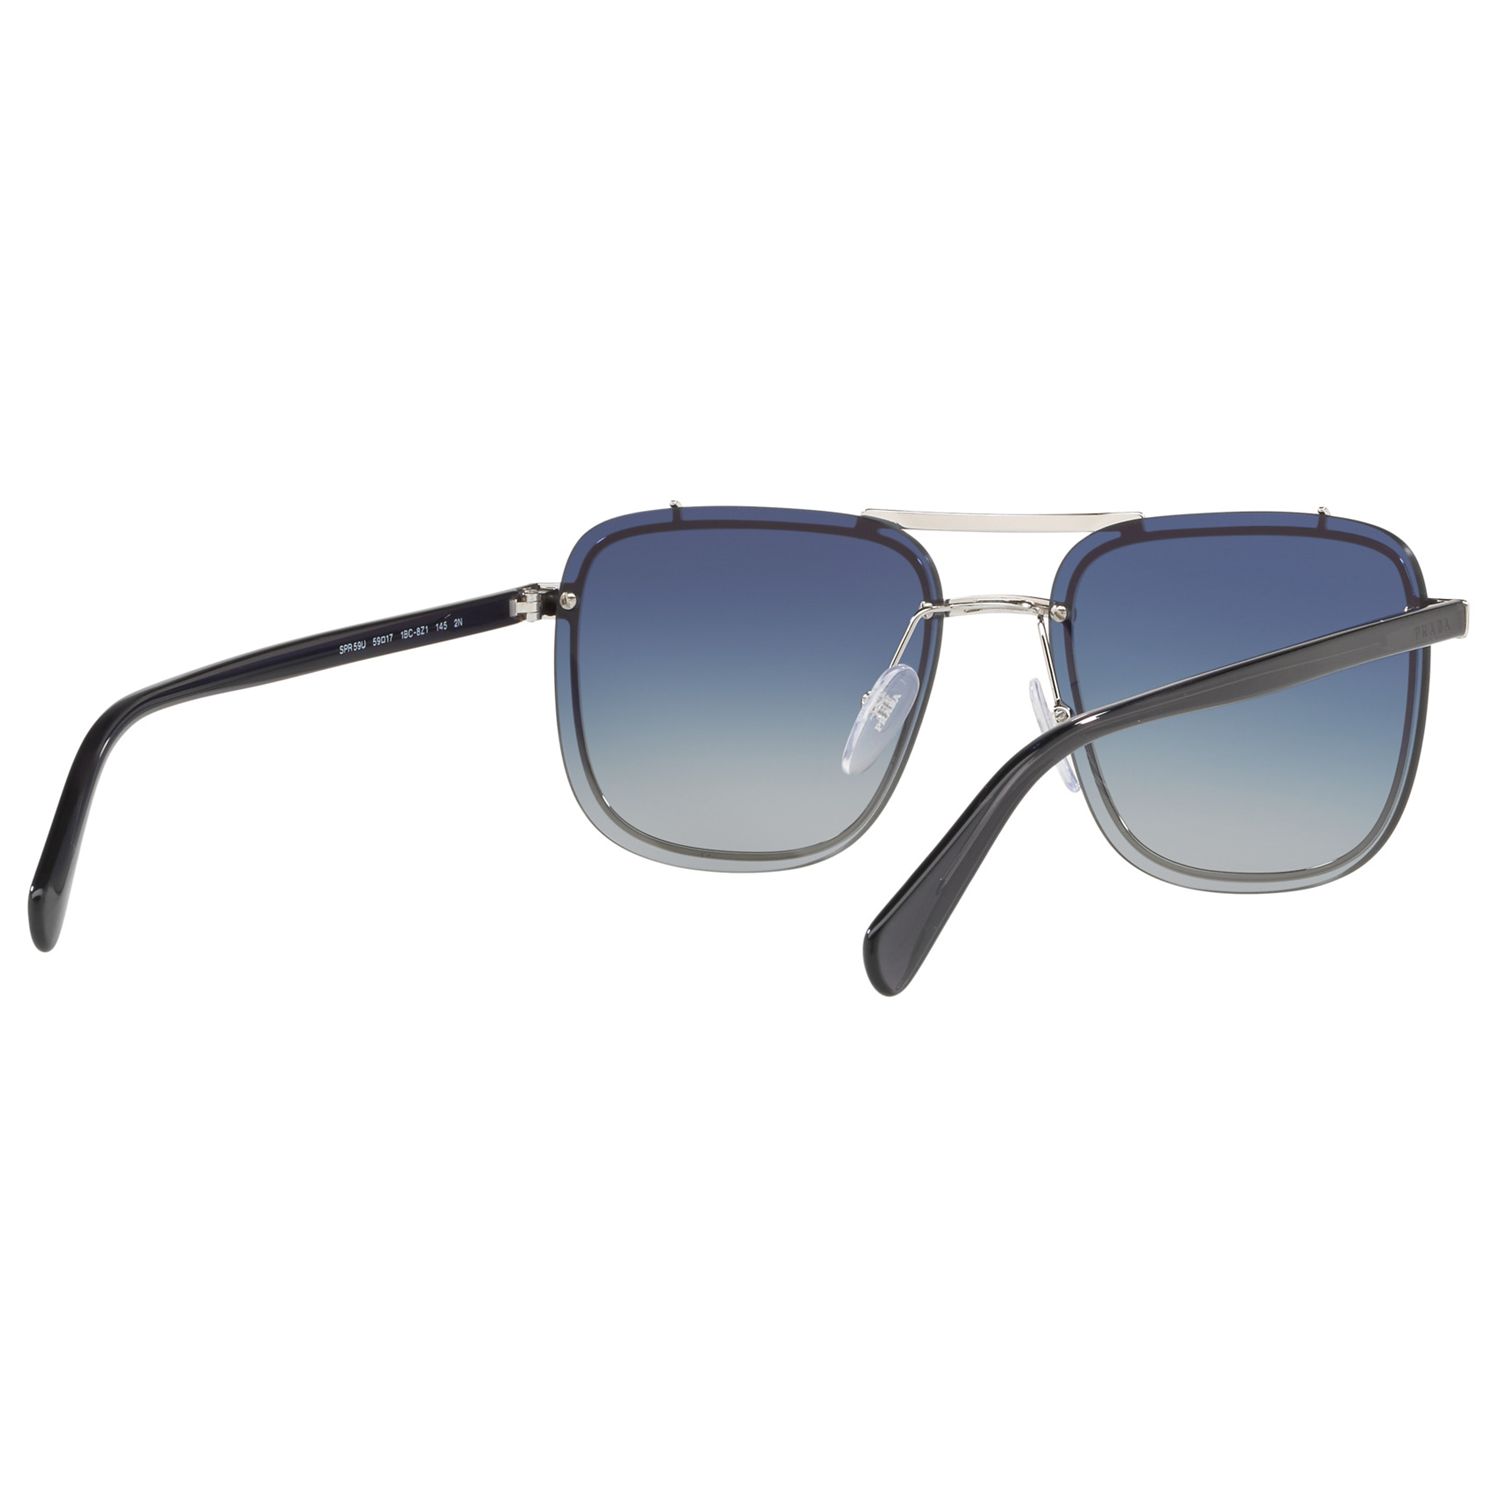 Prada PR 59US Men's Square Sunglasses, Silver/Blue Gradient